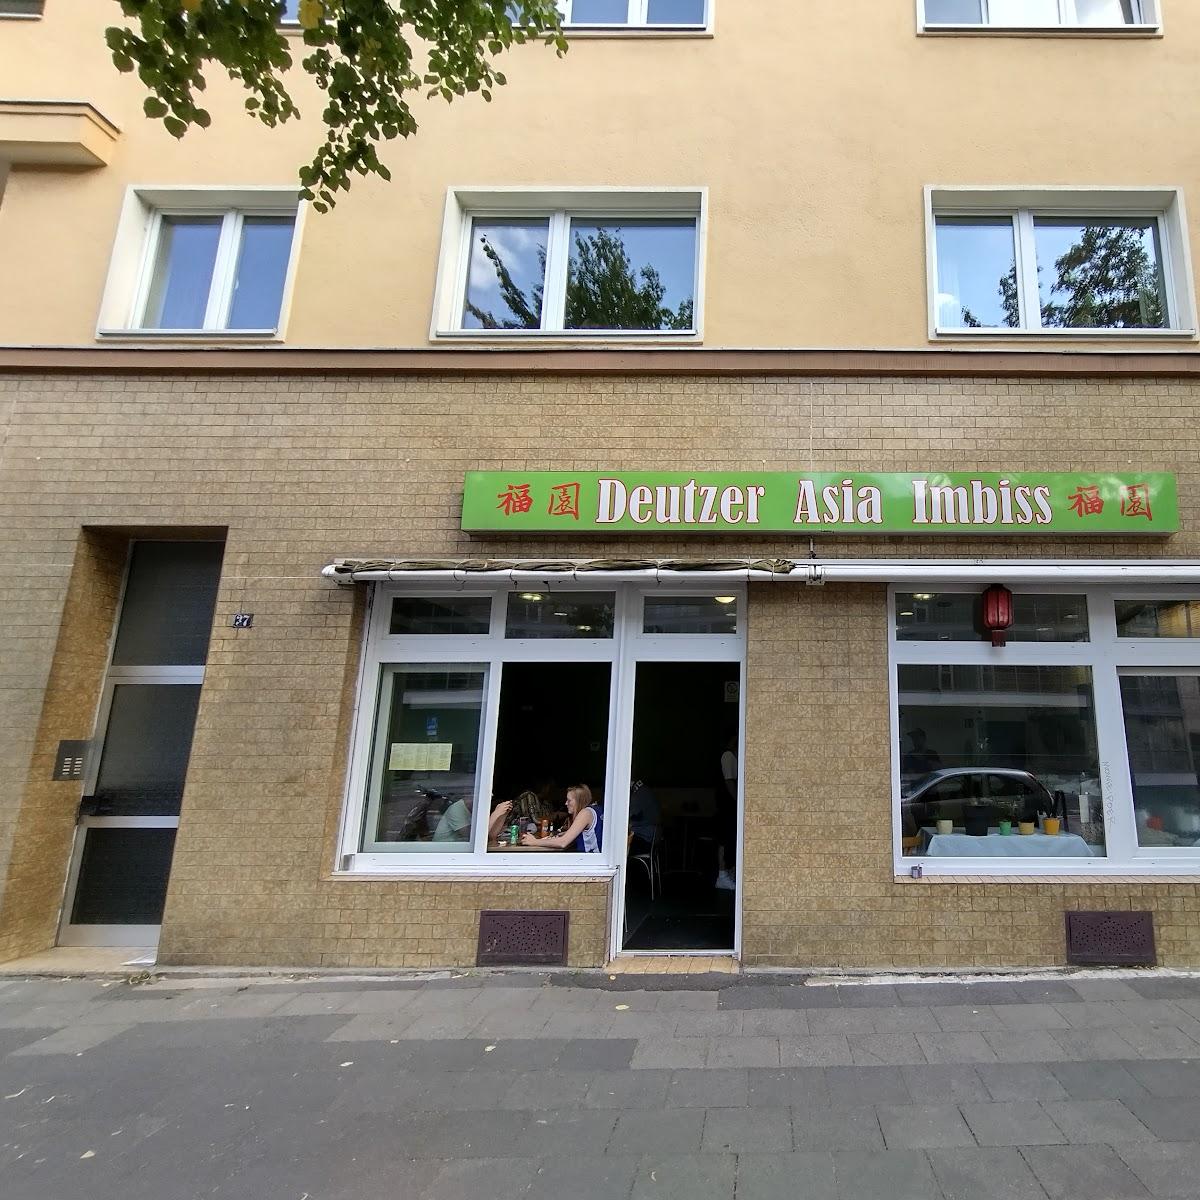 Restaurant "Deutzer Asia Imbiss" in Köln